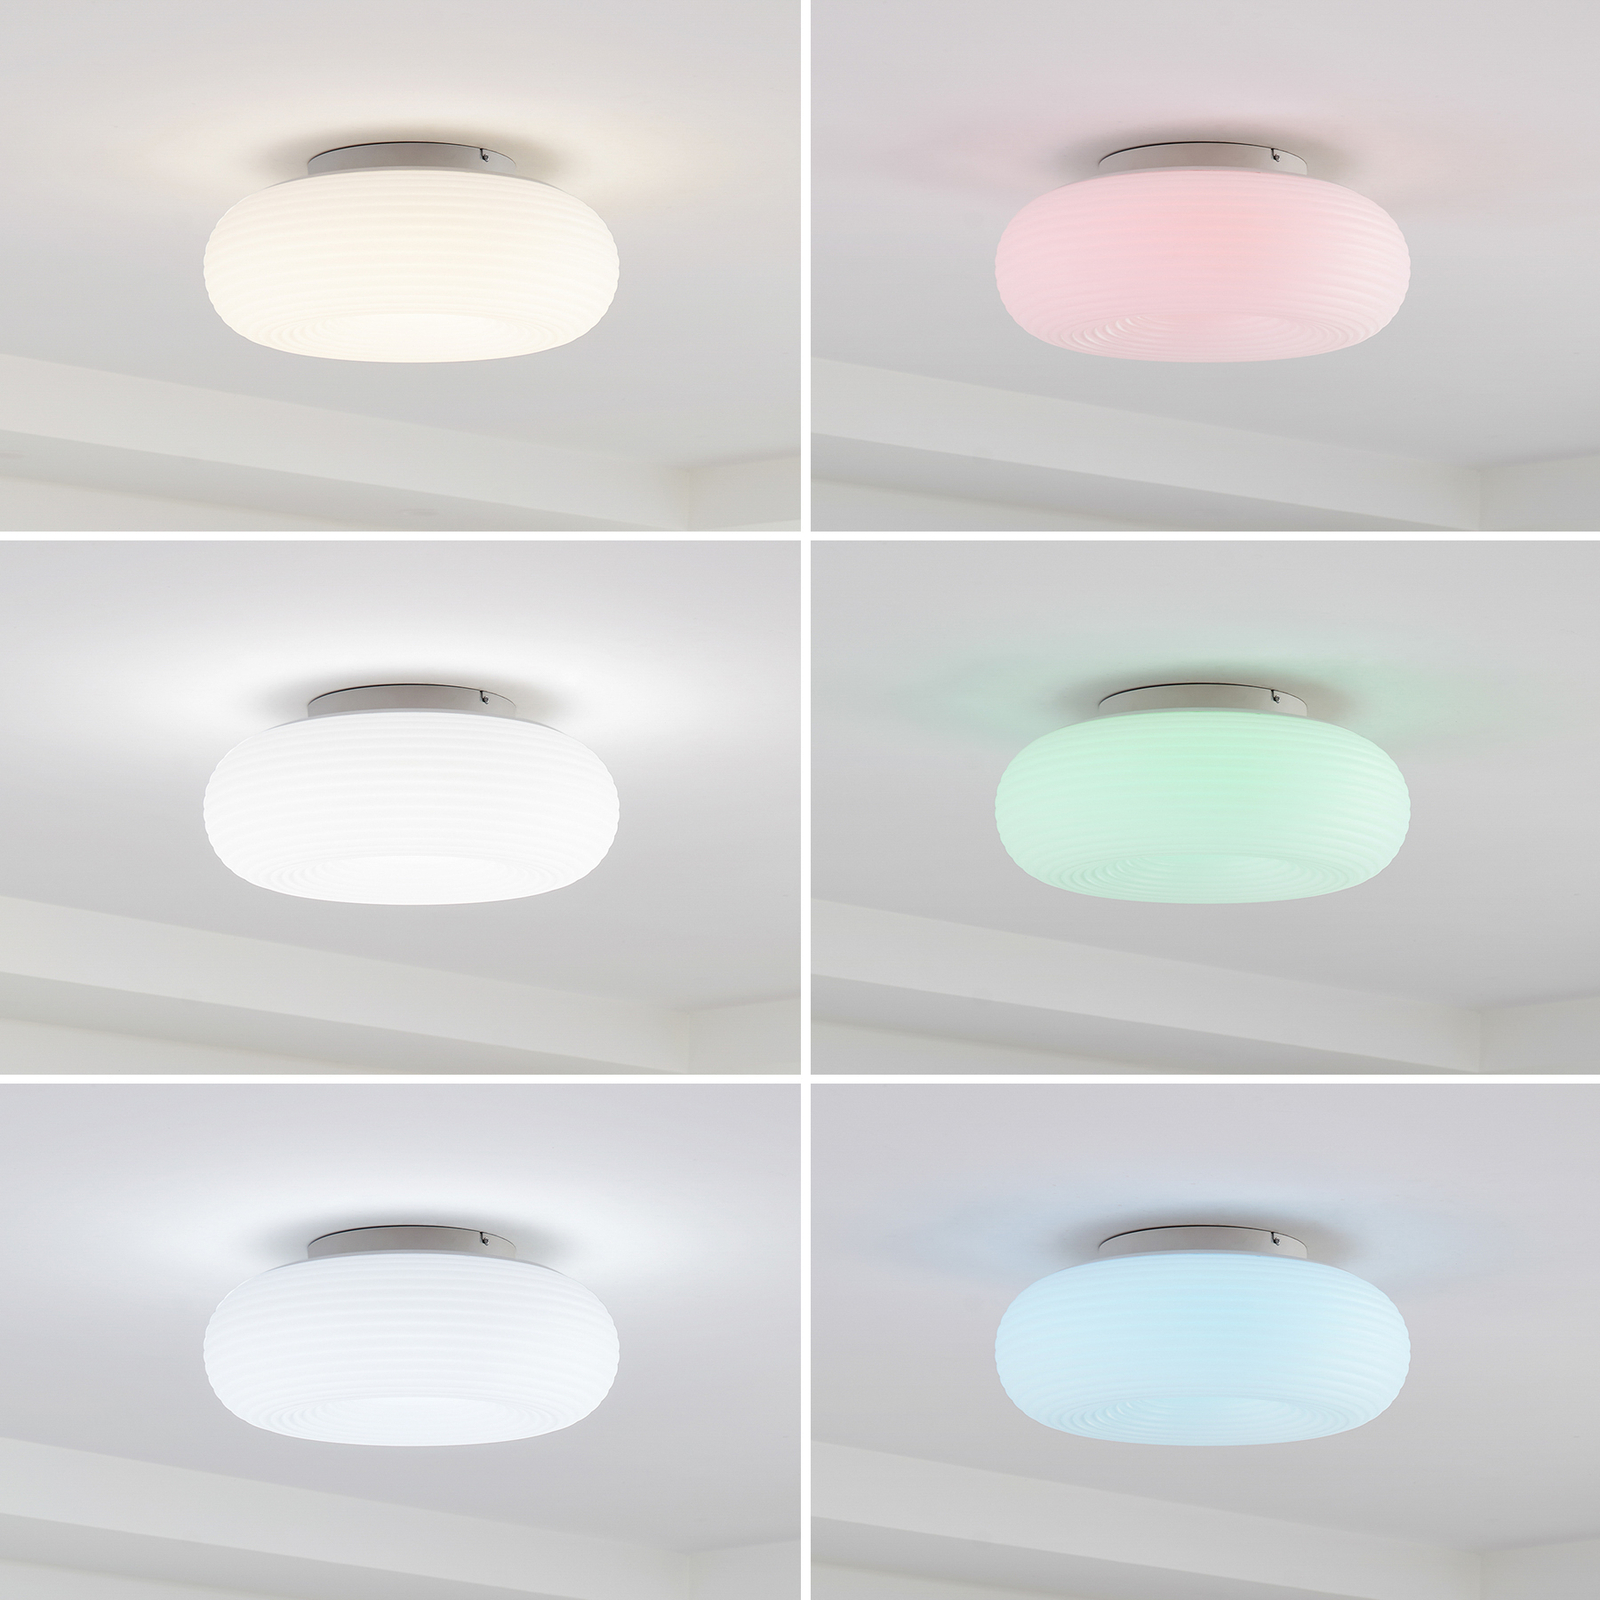 Lucande Smart Plafonnier LED Bolti, blanc, RGBW, CCT, Tuya